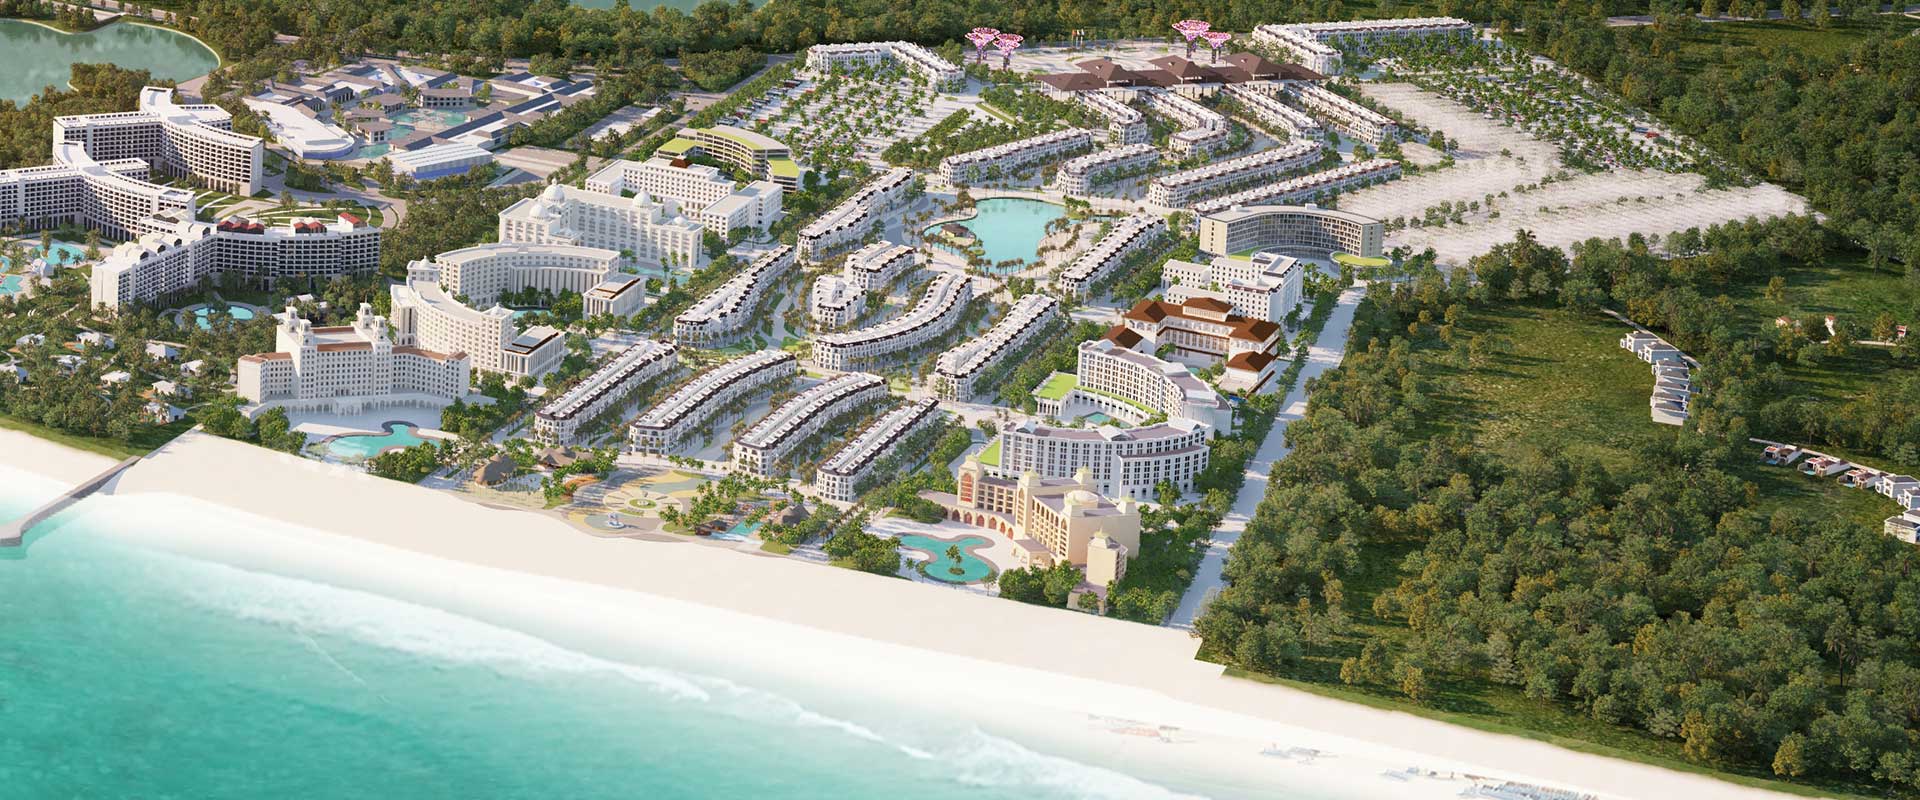 Dự án Grand World Phú Quốc hút dòng tiền của nhà đầu tư